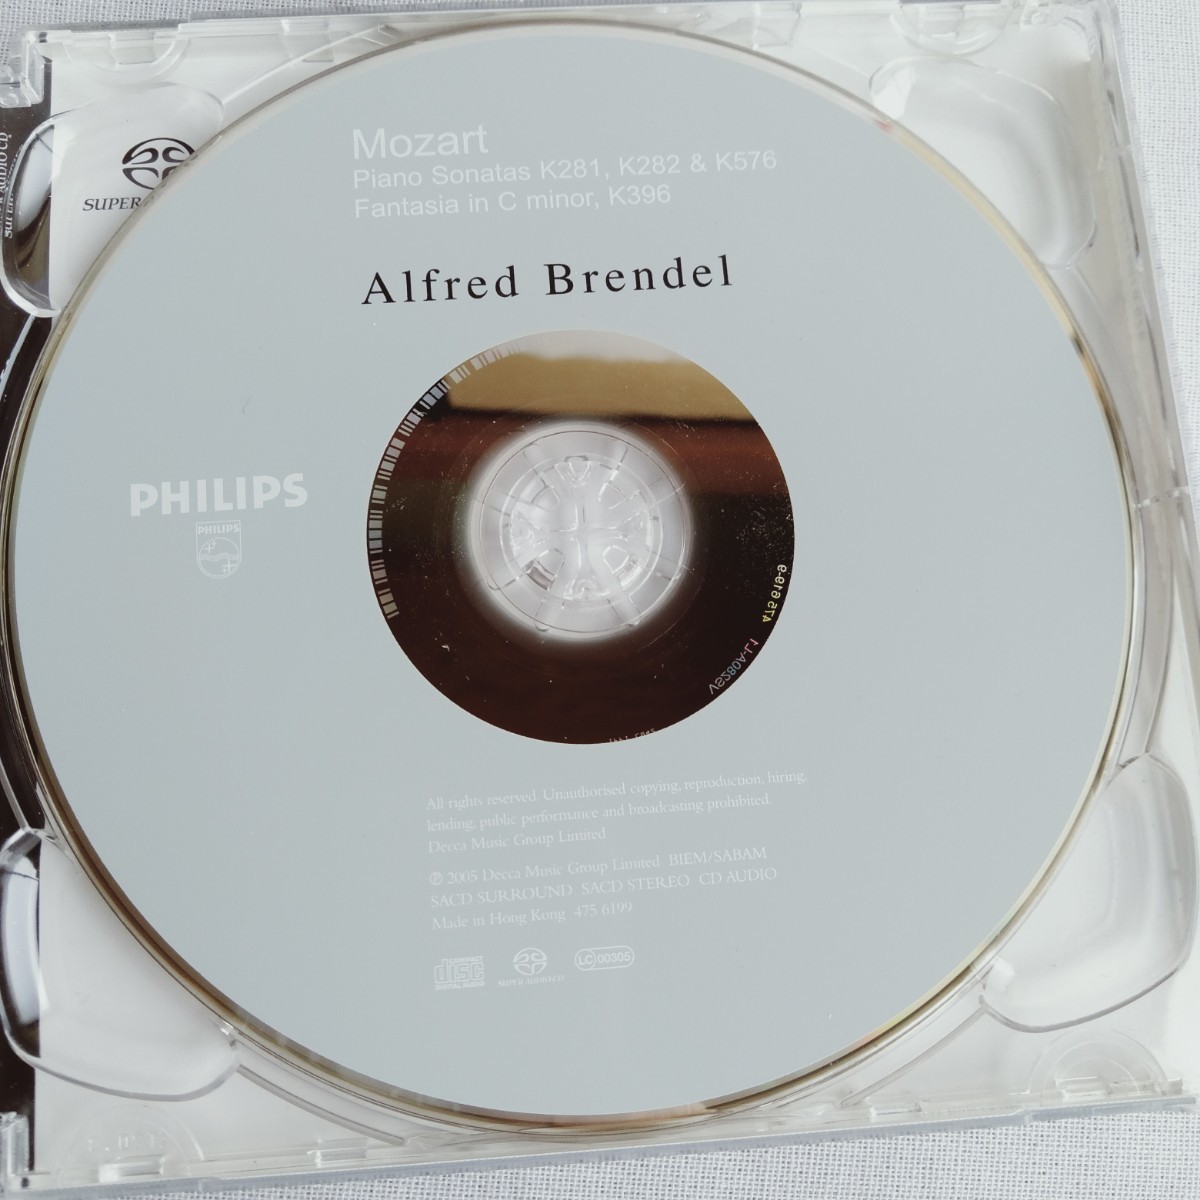 T016 ALFRED BRENDEL ALFRED BRENDEL MOZART: SONATAS K281/K282/K576 CD ケース状態A クラシック オーケストラ_画像4